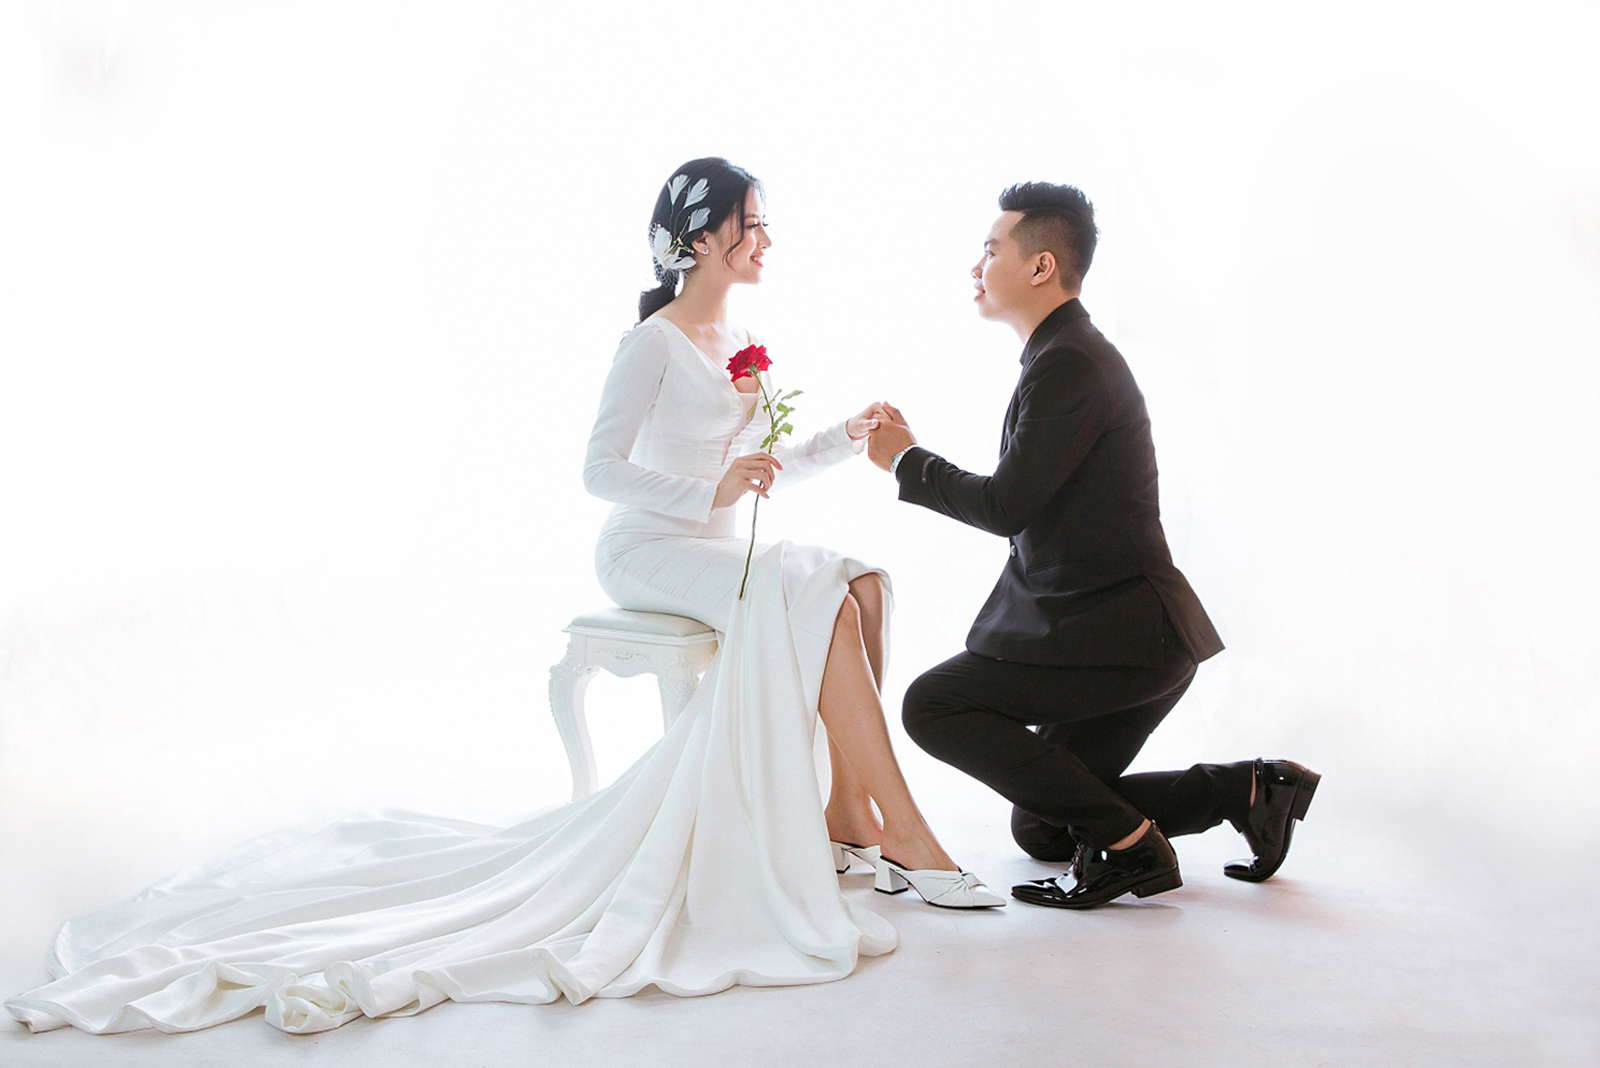 7 lưu ý chọn giày cưới cho cô dâu trong ngày trọng đại